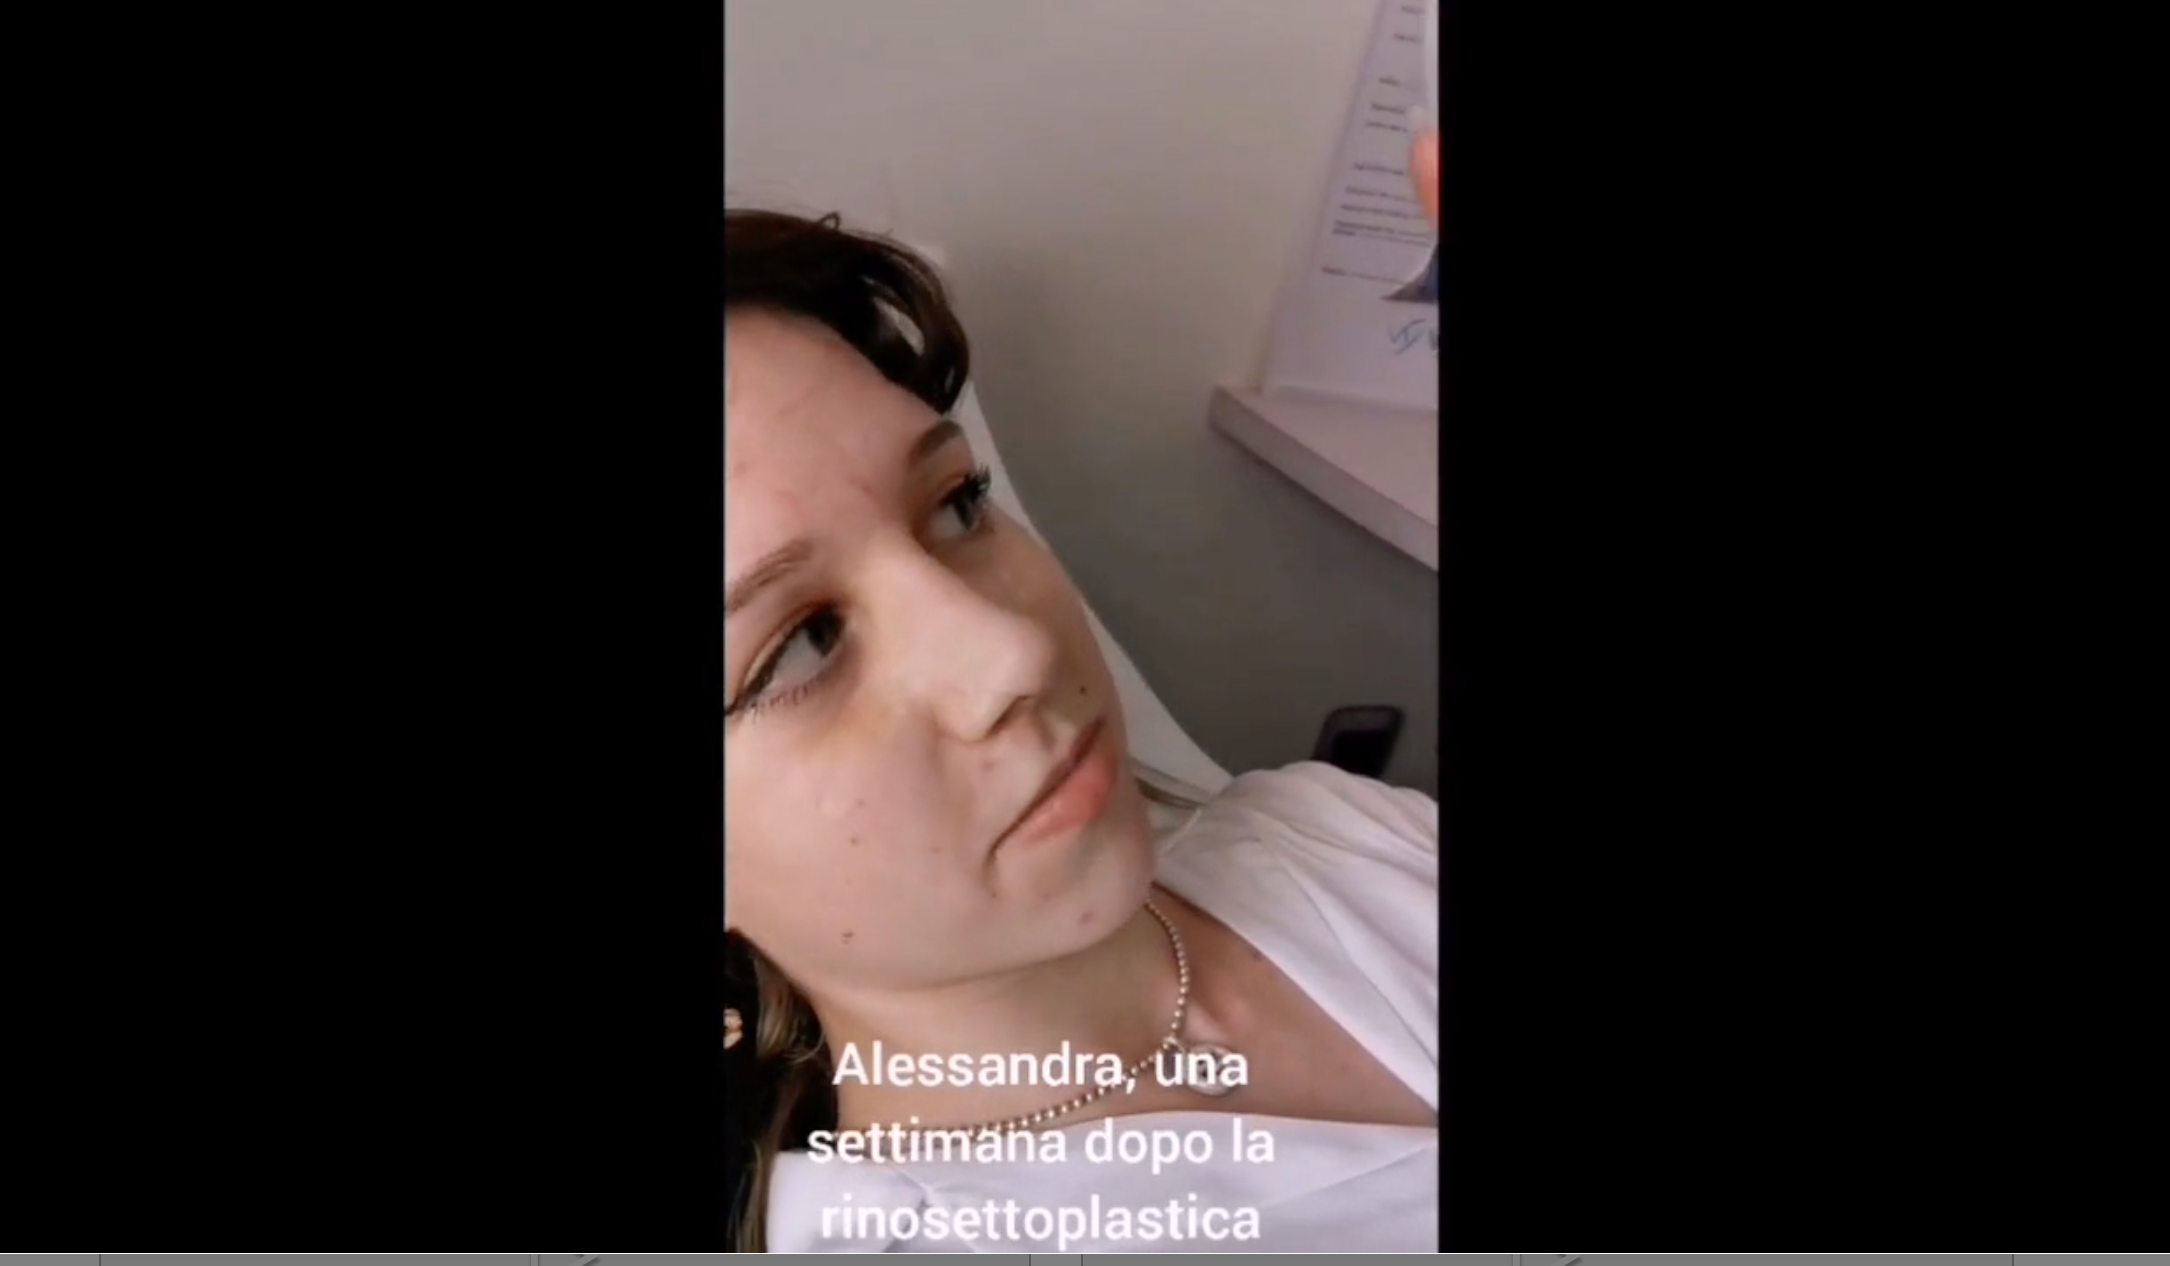 Alessandra una settimana dopo la rinosettoplastica